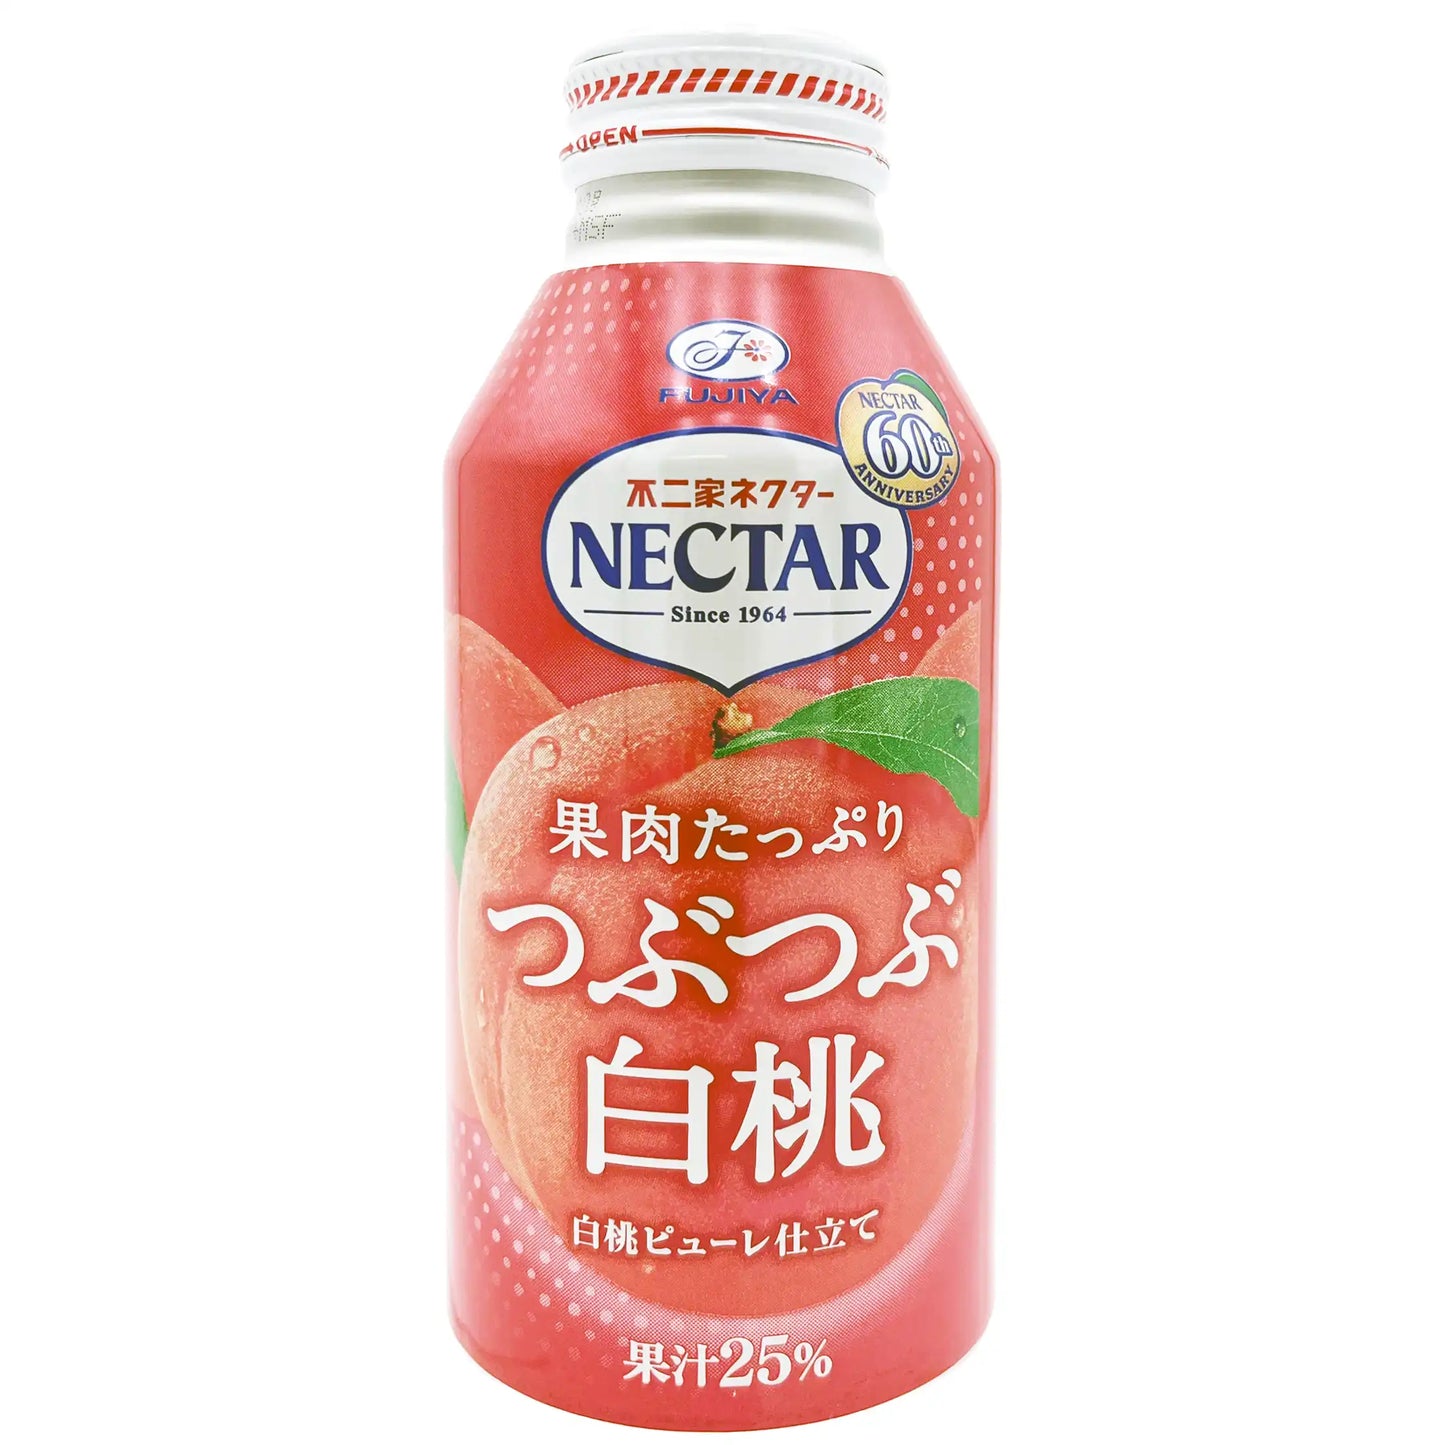 Fujiya Nectar Tsubu Tsubu Peach Can 13.4 oz